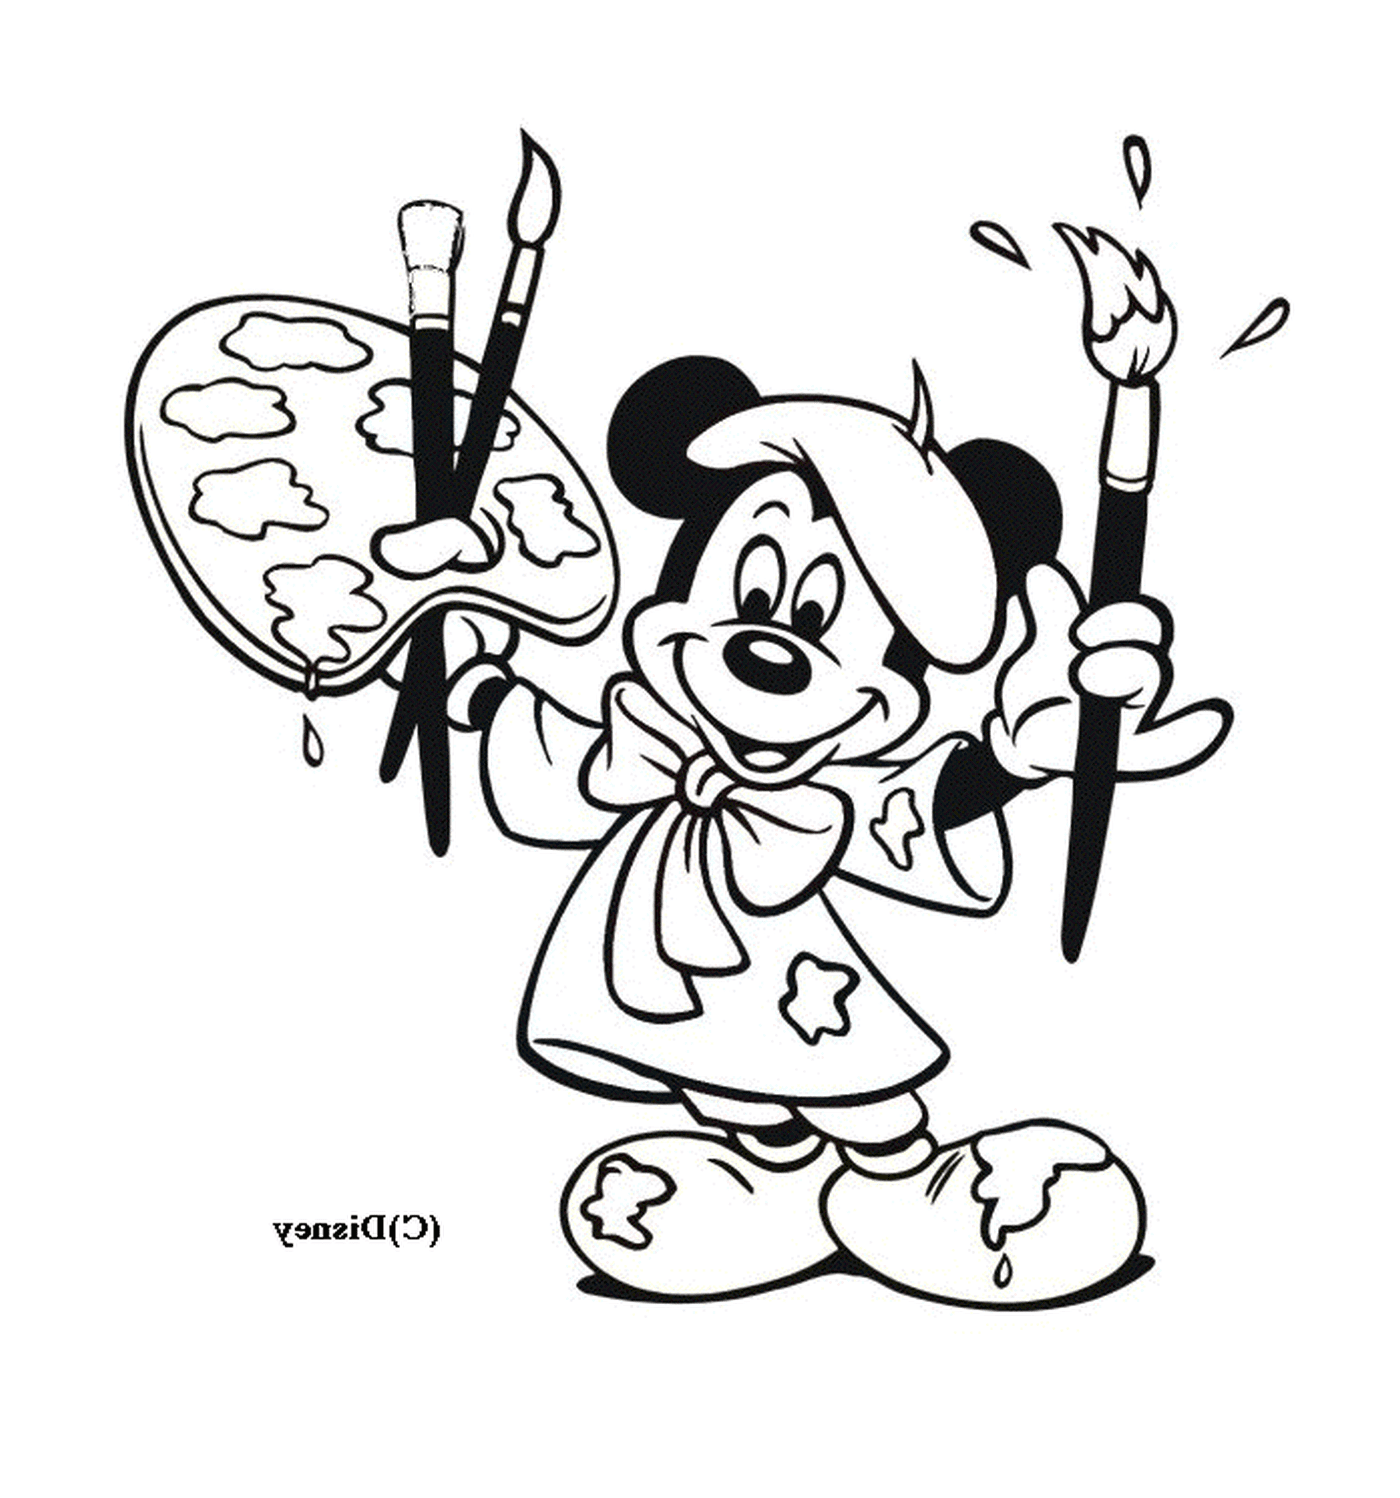  Mickey è un pittore: impugna pennelli e cavalletto 